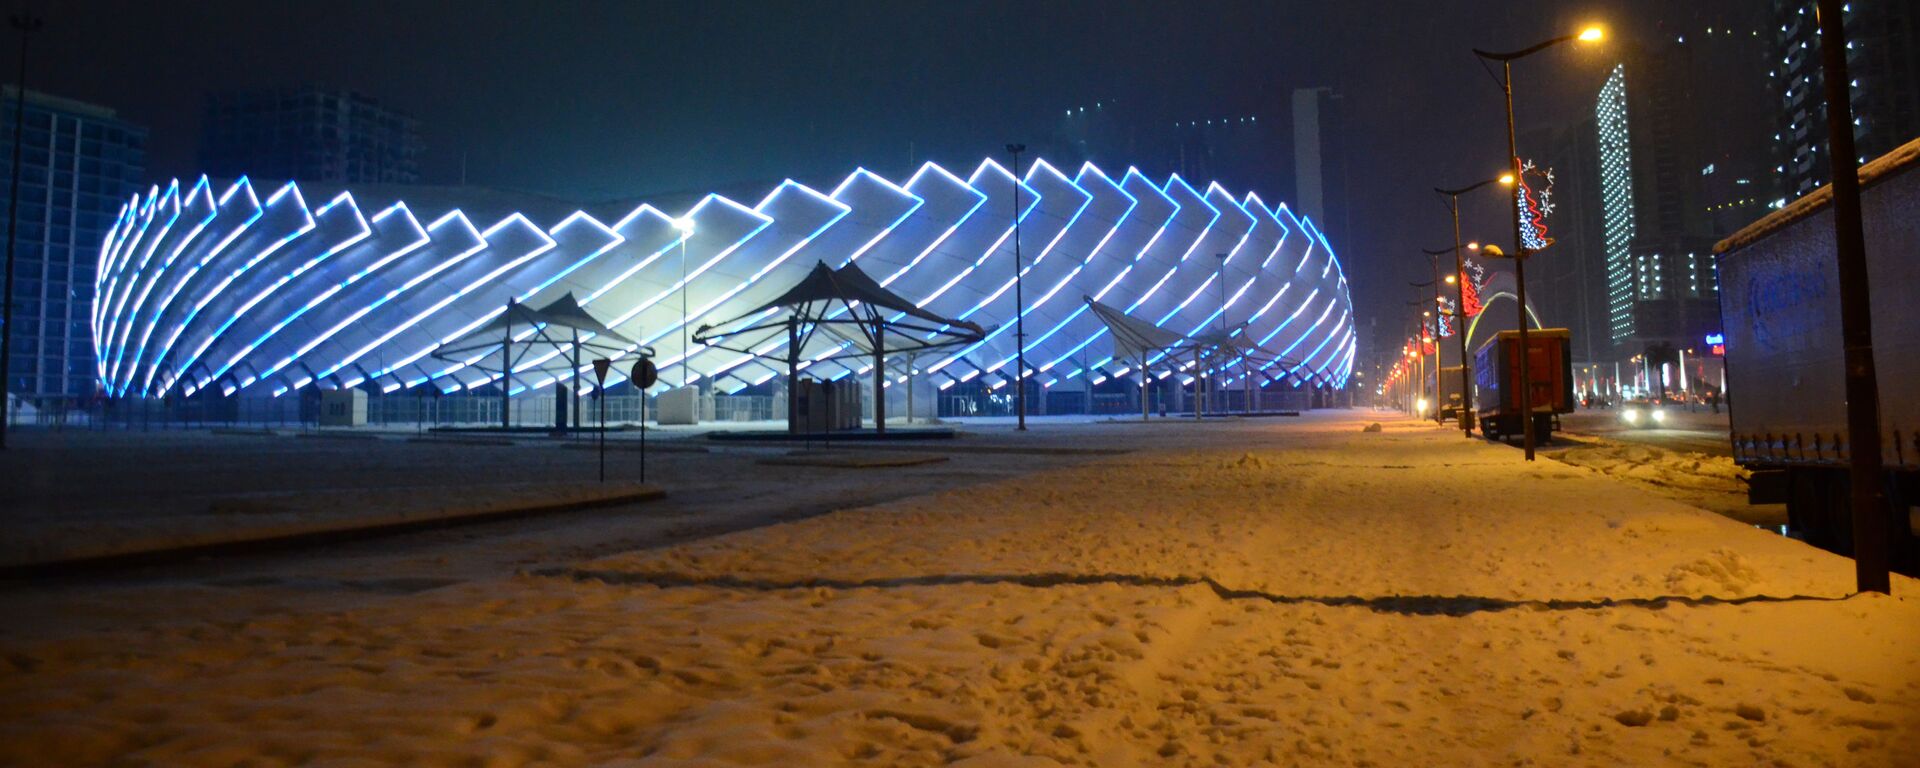 Батуми в снегу зимой - новый олимпийский Батумский стадион - Sputnik Грузия, 1920, 10.02.2021